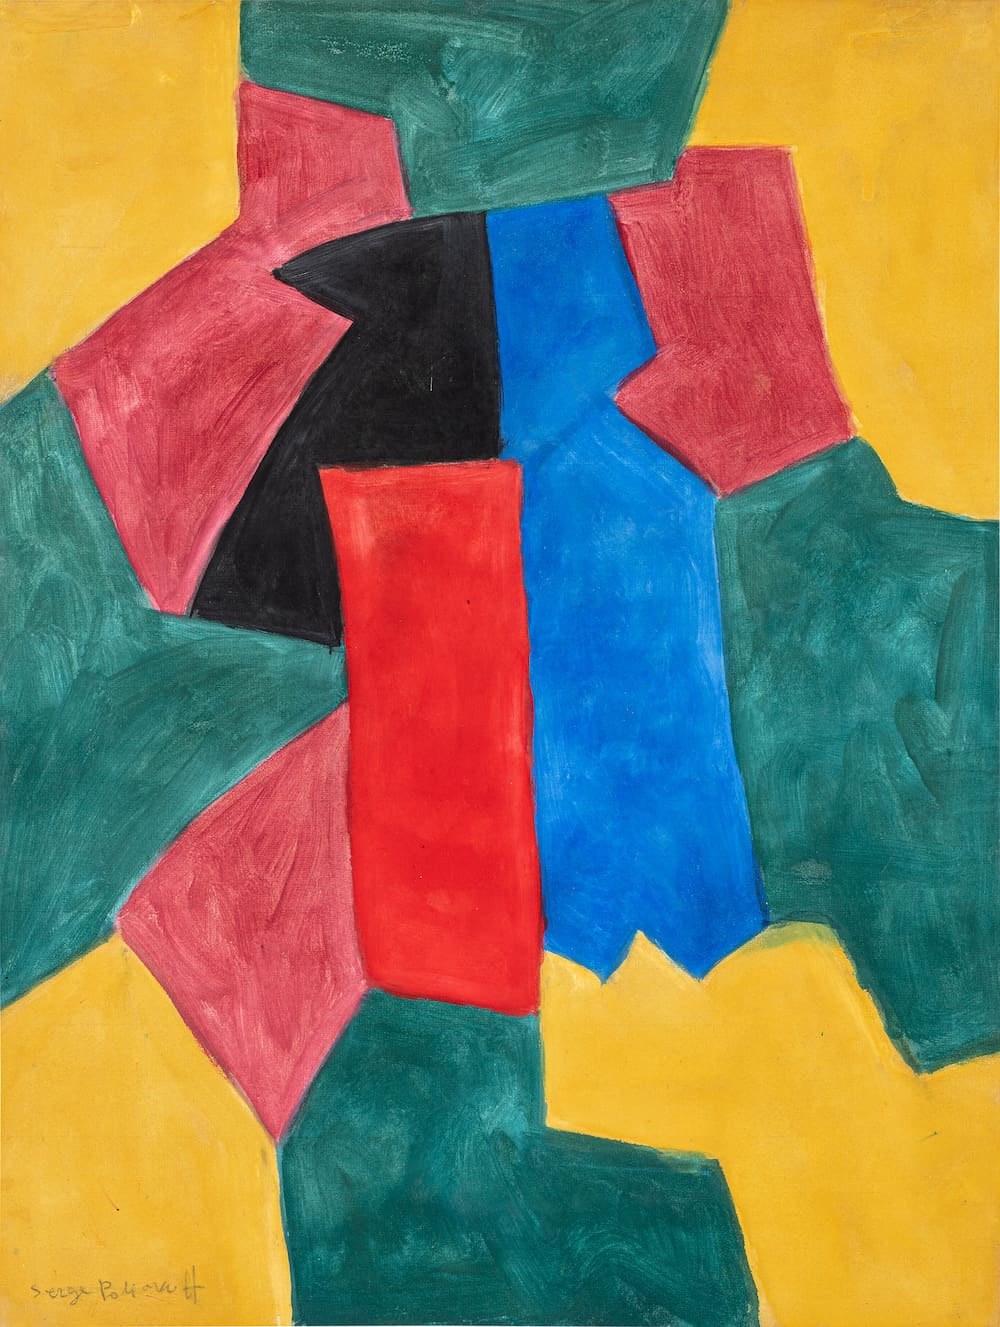 Galerie Ludorff, Serge Poliakoff, Composition abstraite, 1967, Gouache sur papier, 63 x 49 cm